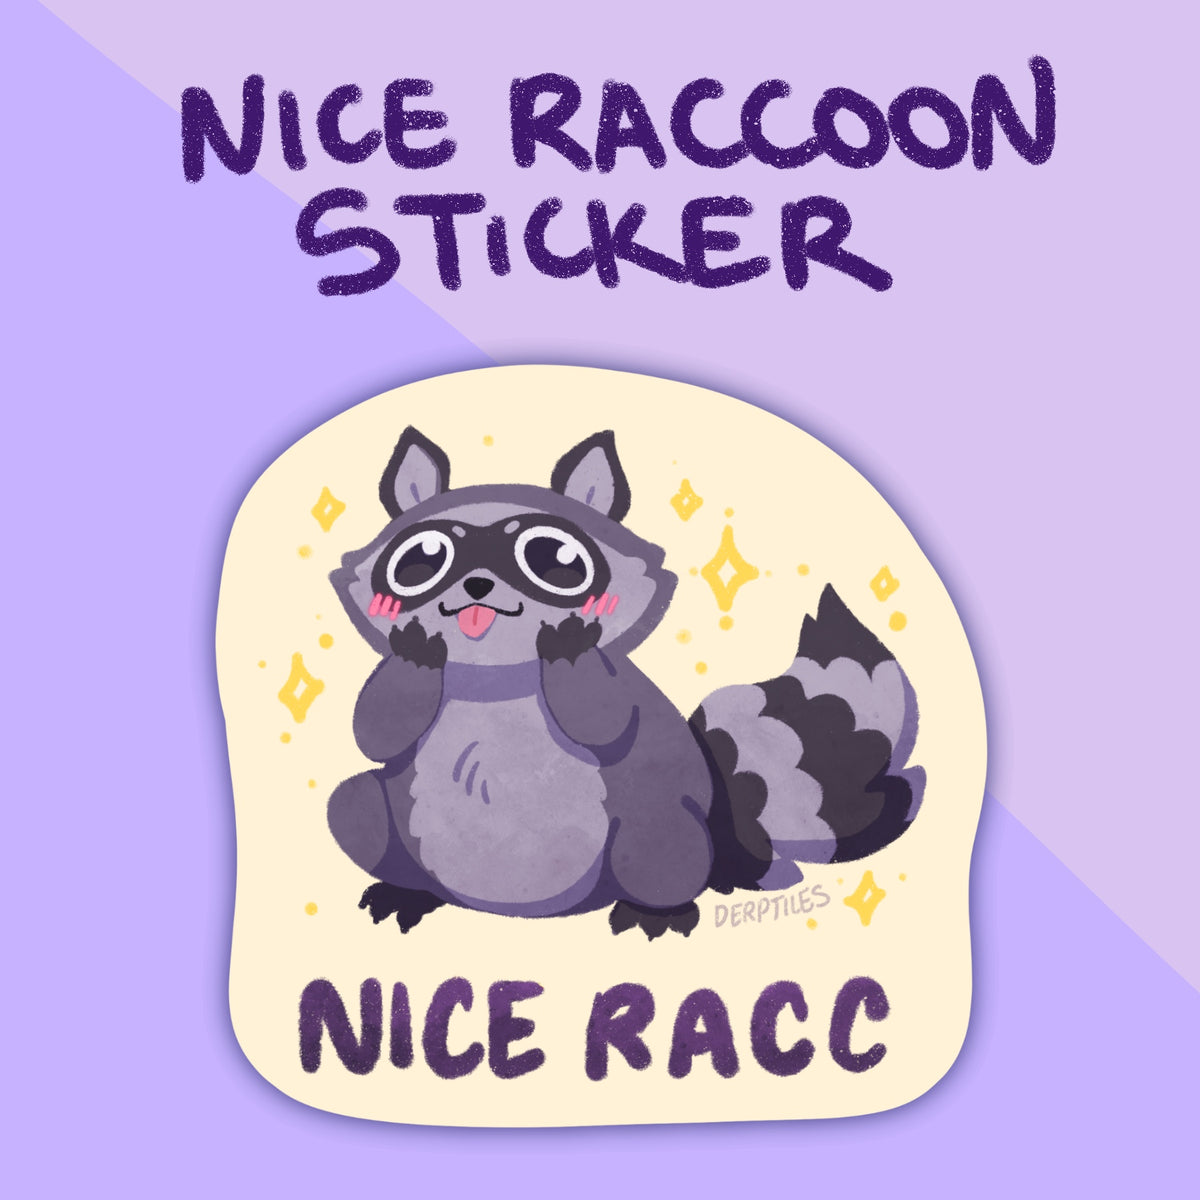 Nice Raccoon Sticker – Derptiles